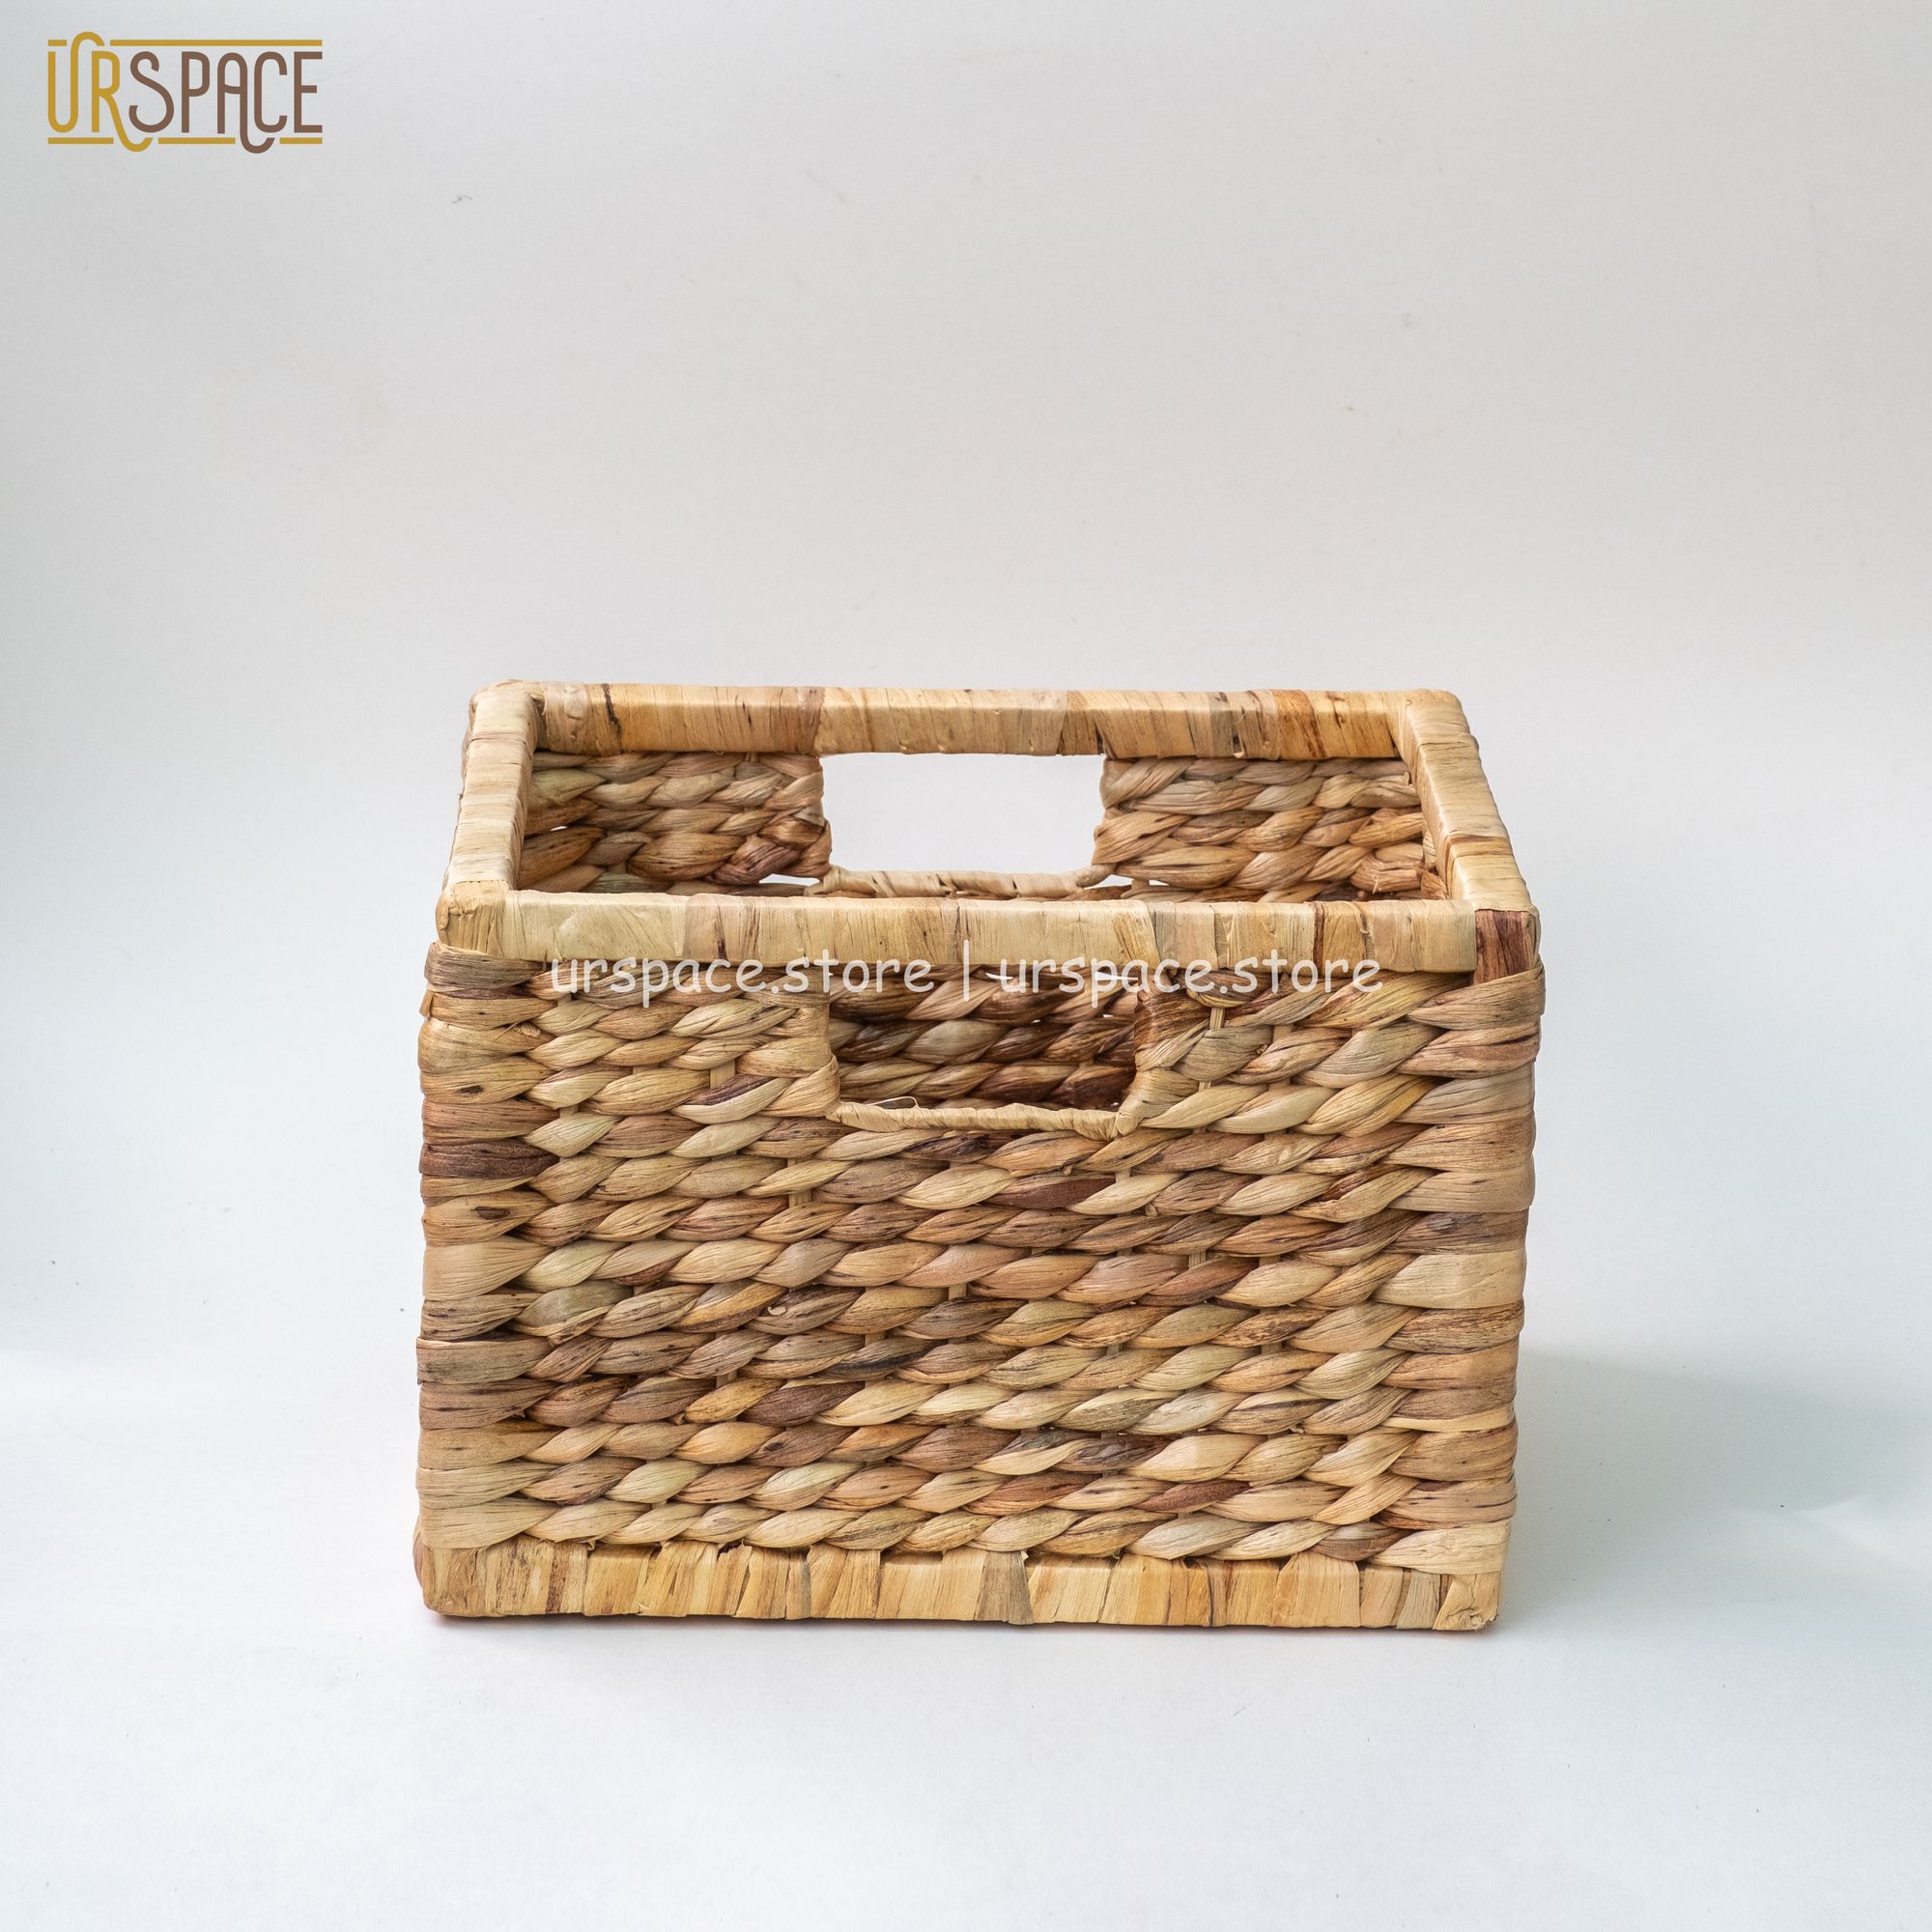 Sọt cói (lục bình) chữ nhật khung gỗ trang trí đa năng/ Hand-wowen rectangle water hyacinth storage basket for home deco